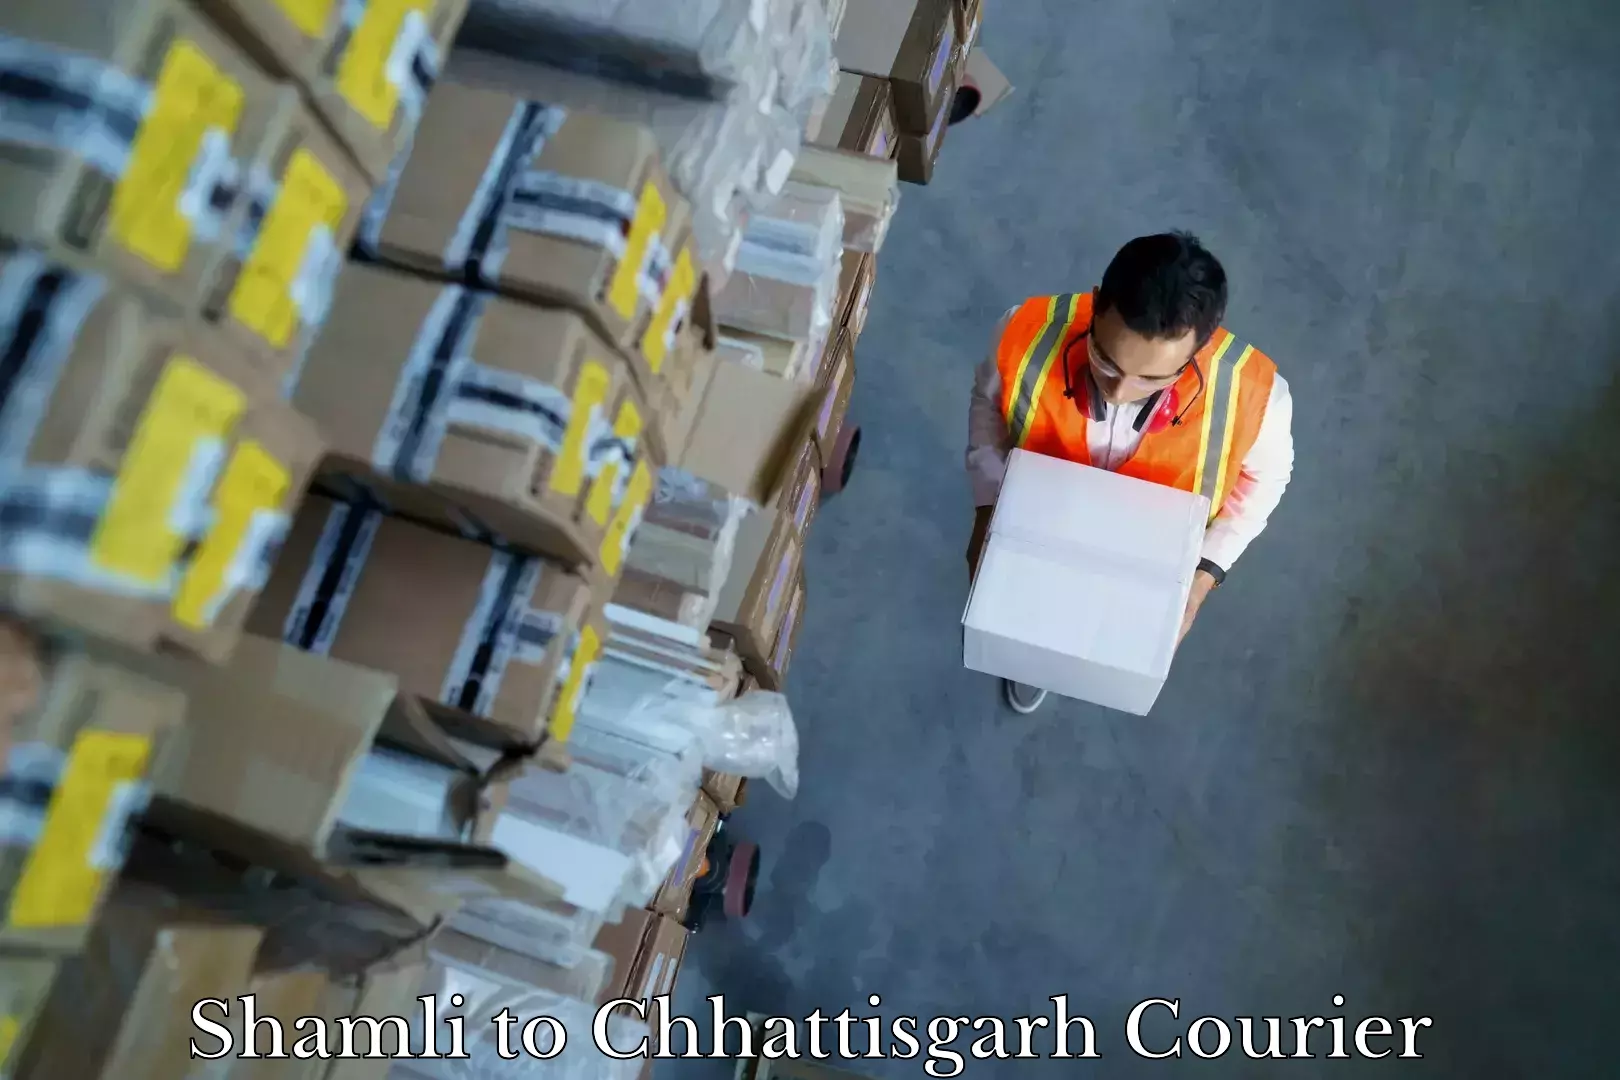 Household logistics services Shamli to Patna Chhattisgarh